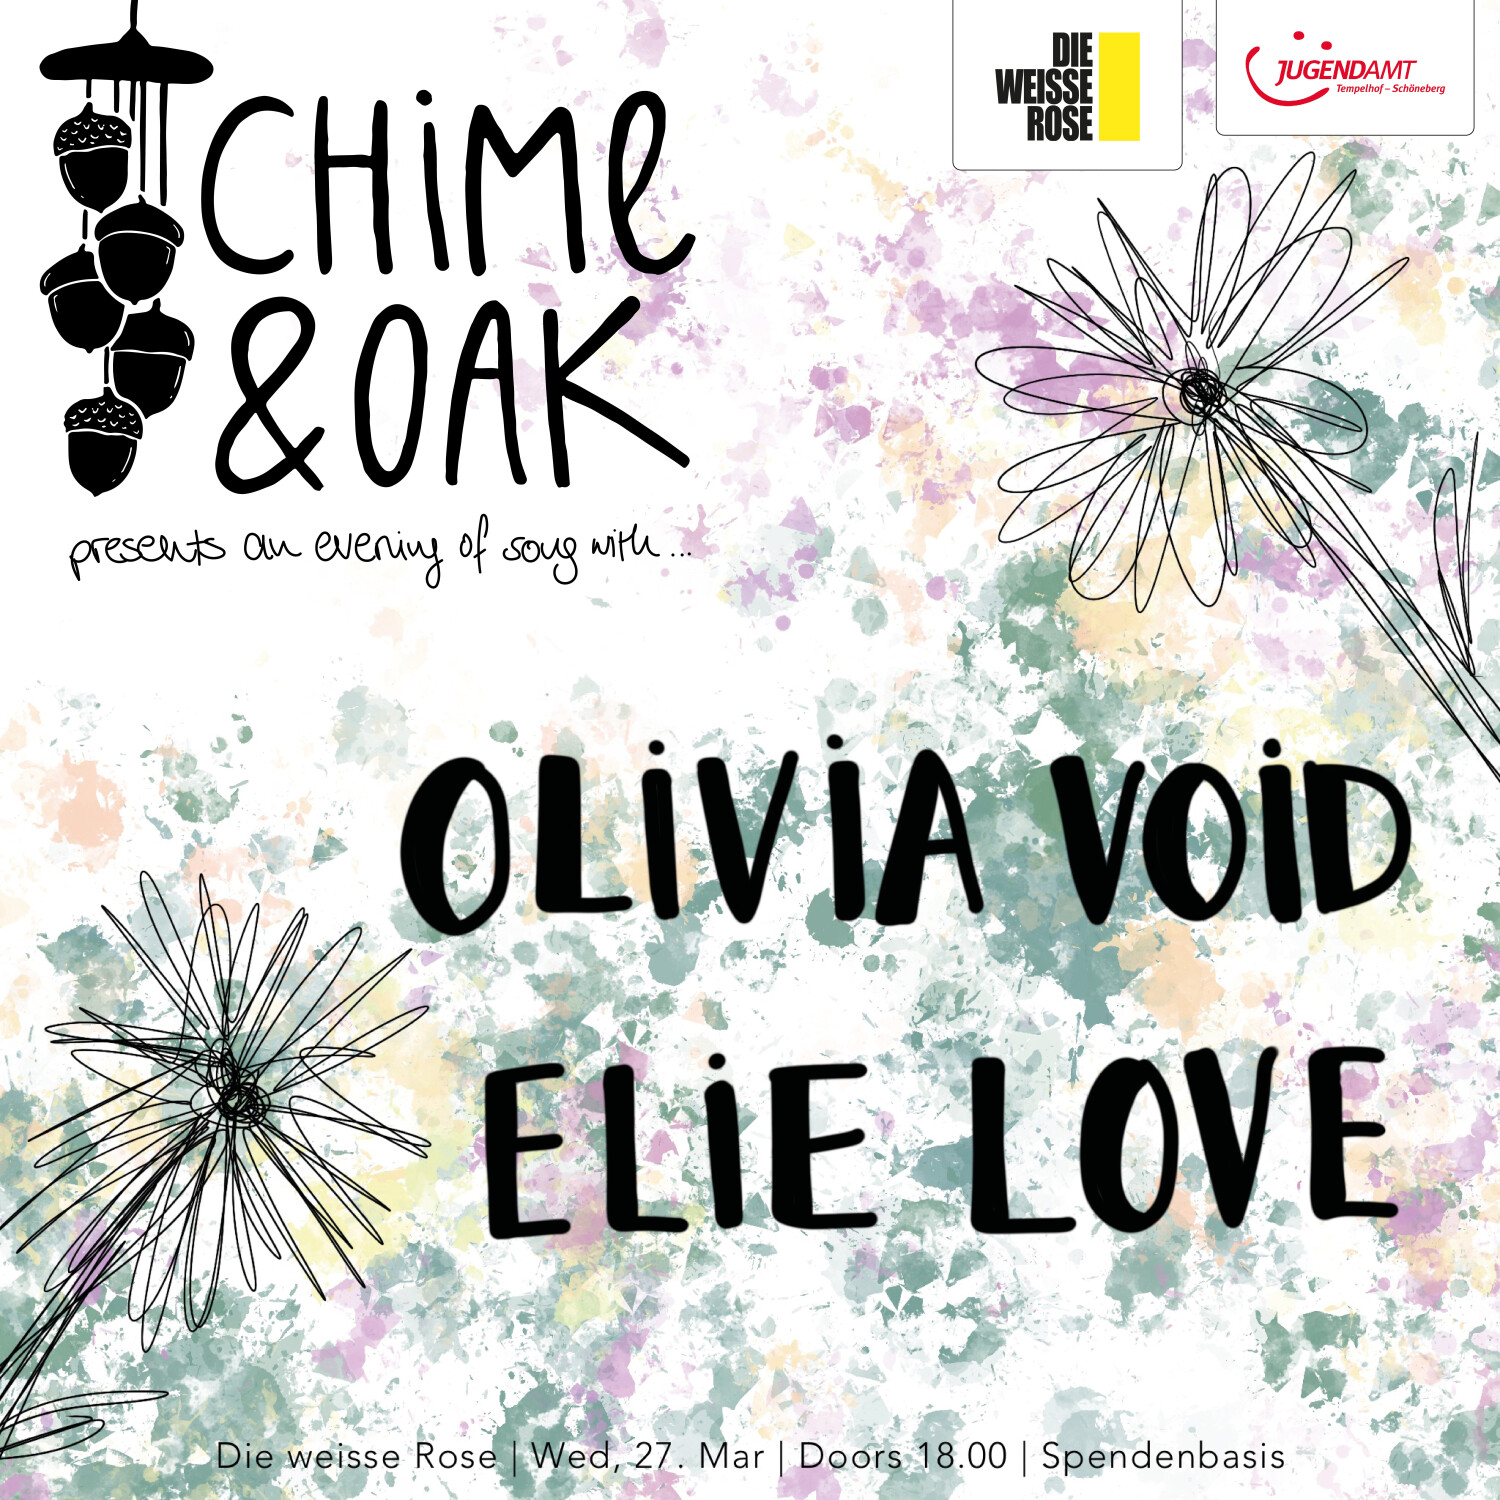 chime and oak flyer für die veranstaltung am 27.03. Abgebildet sind die beiden Namen mit Flecken und Blumen im Hintergrund 